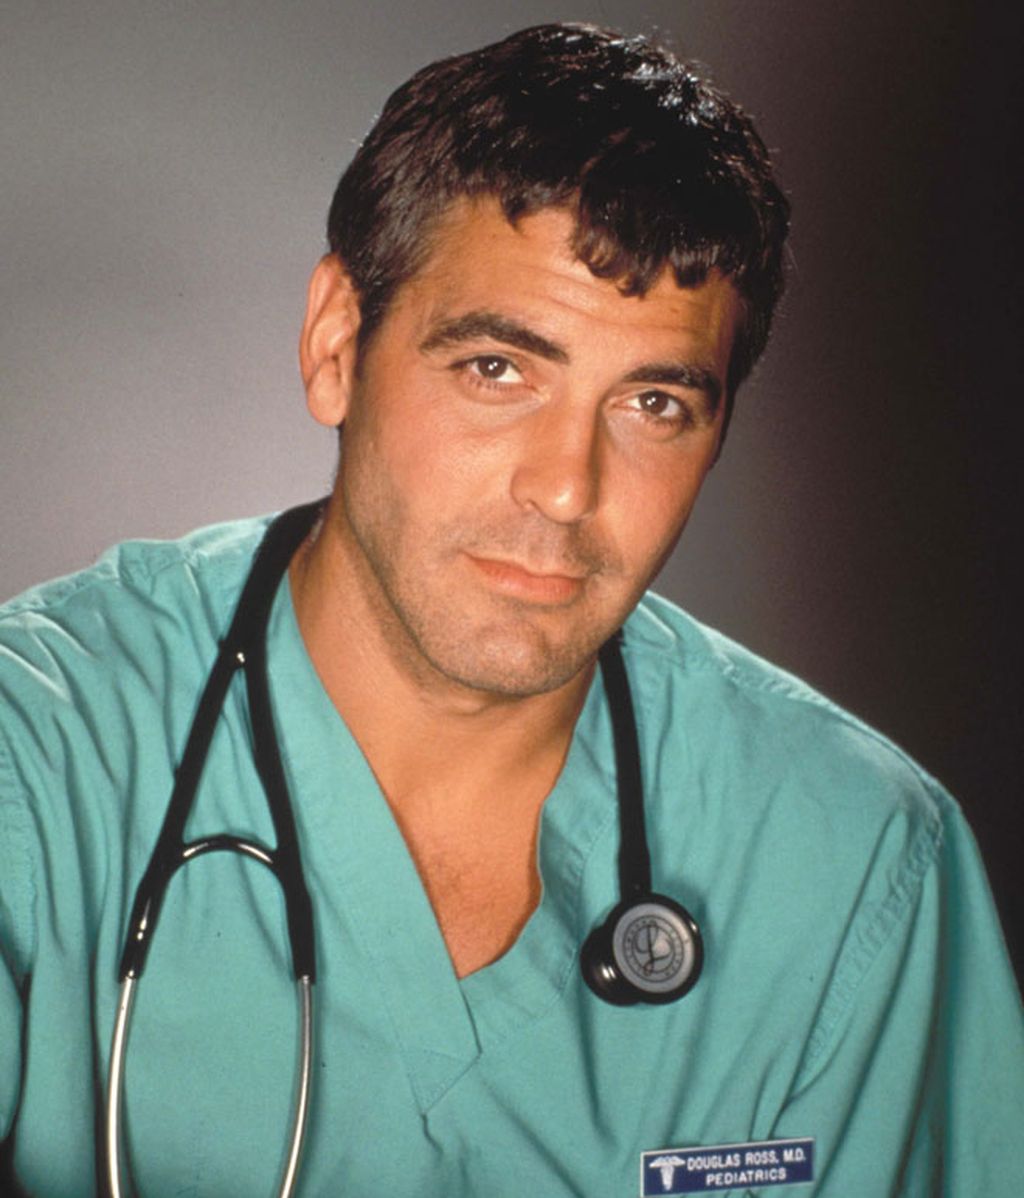 Los envidiados 50 años de George Clooney